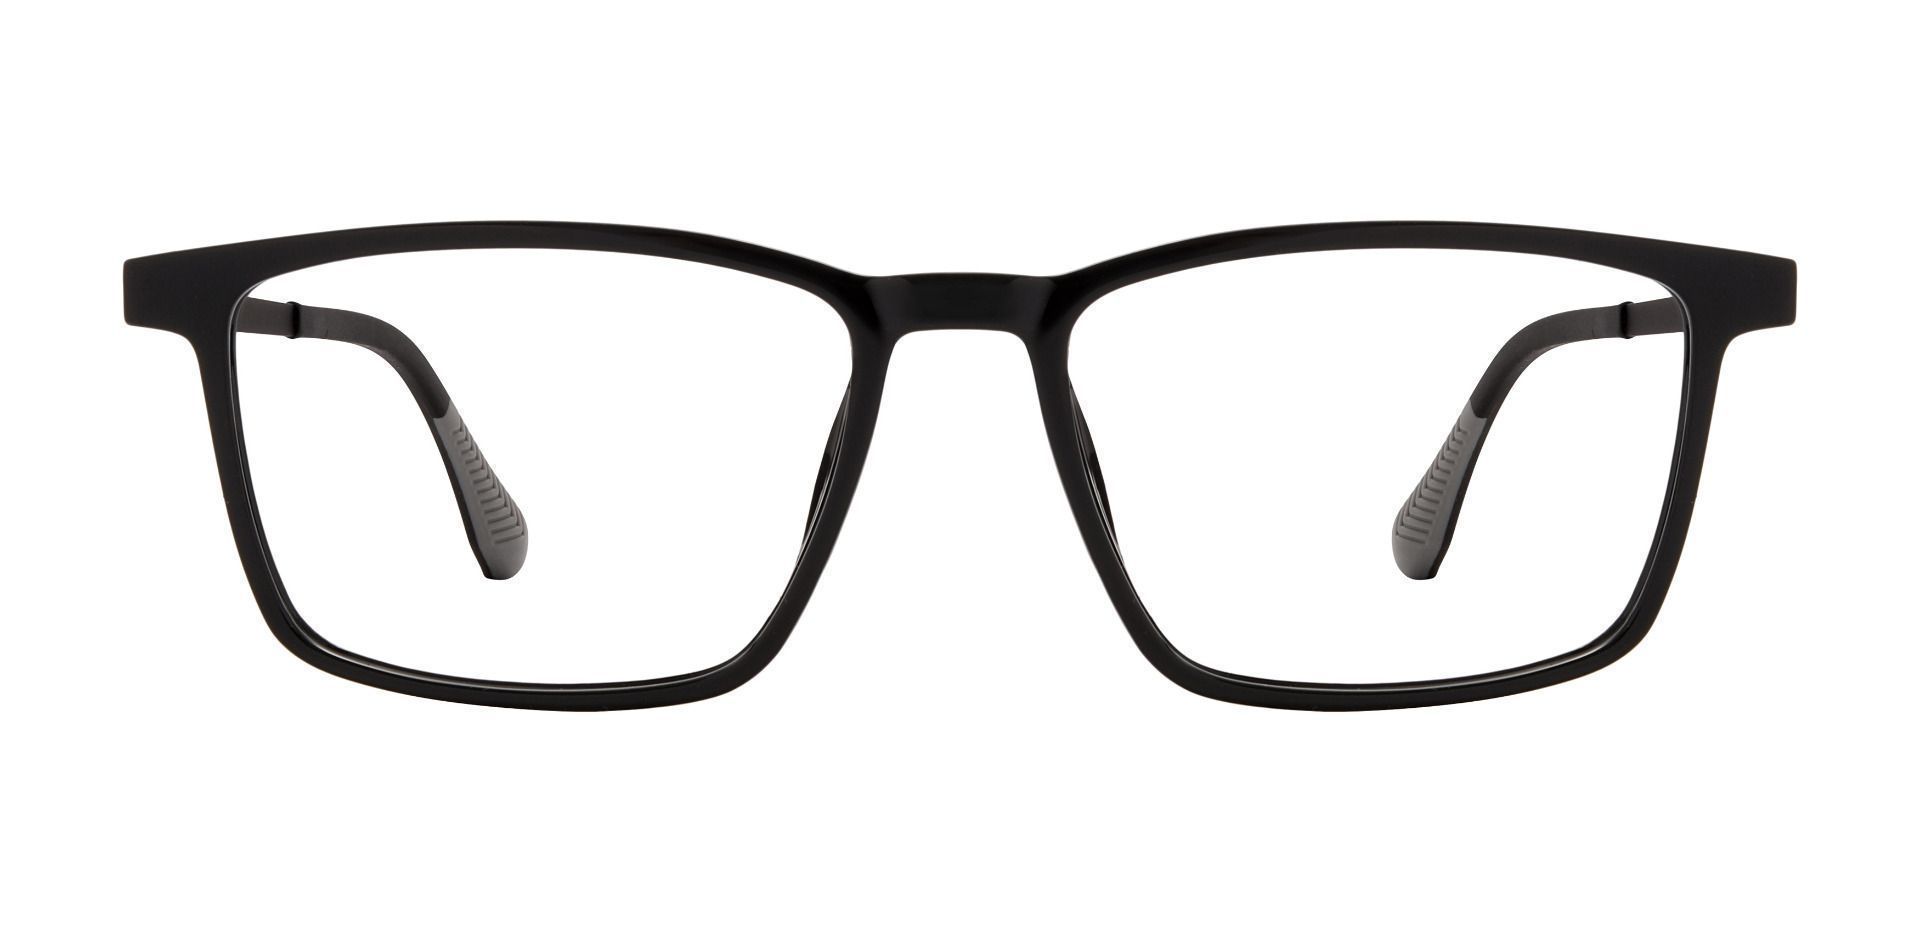 Althea Rectangle Prescription Glasses - Black